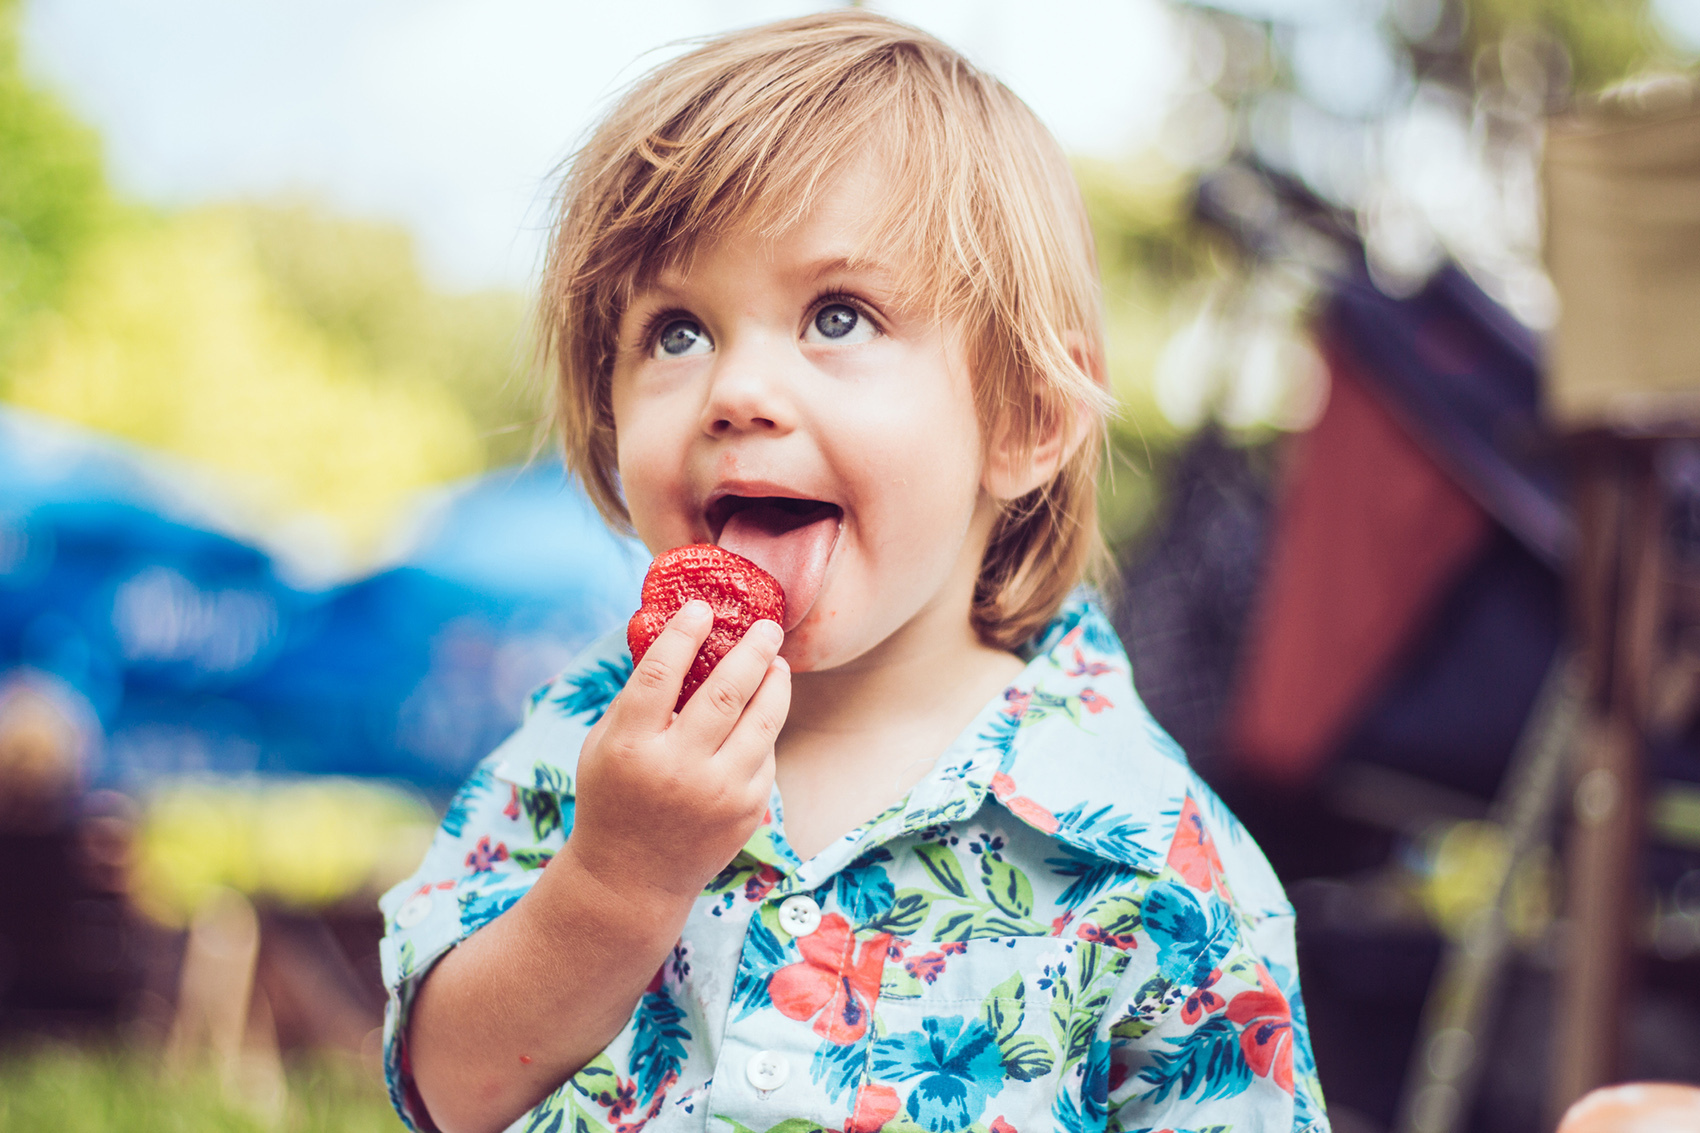 Jak zachęcić dziecko do jedzenia warzyw i owoców?